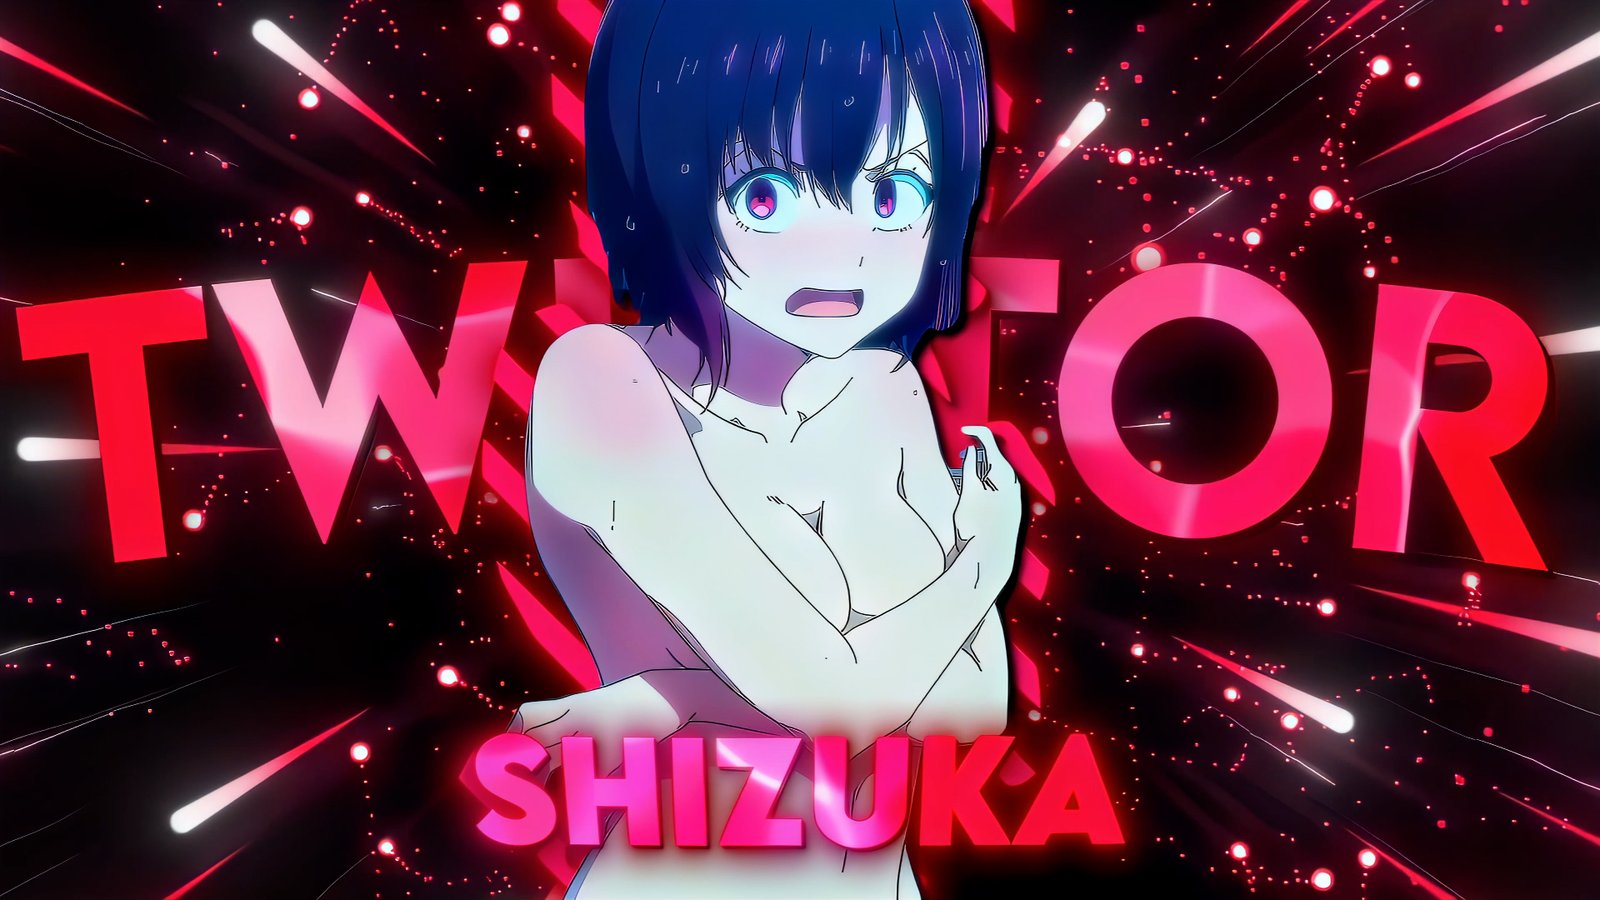 Mikazuki Shizuka Naked Twixtor Clips 4K (Zom 100 Twixtor)